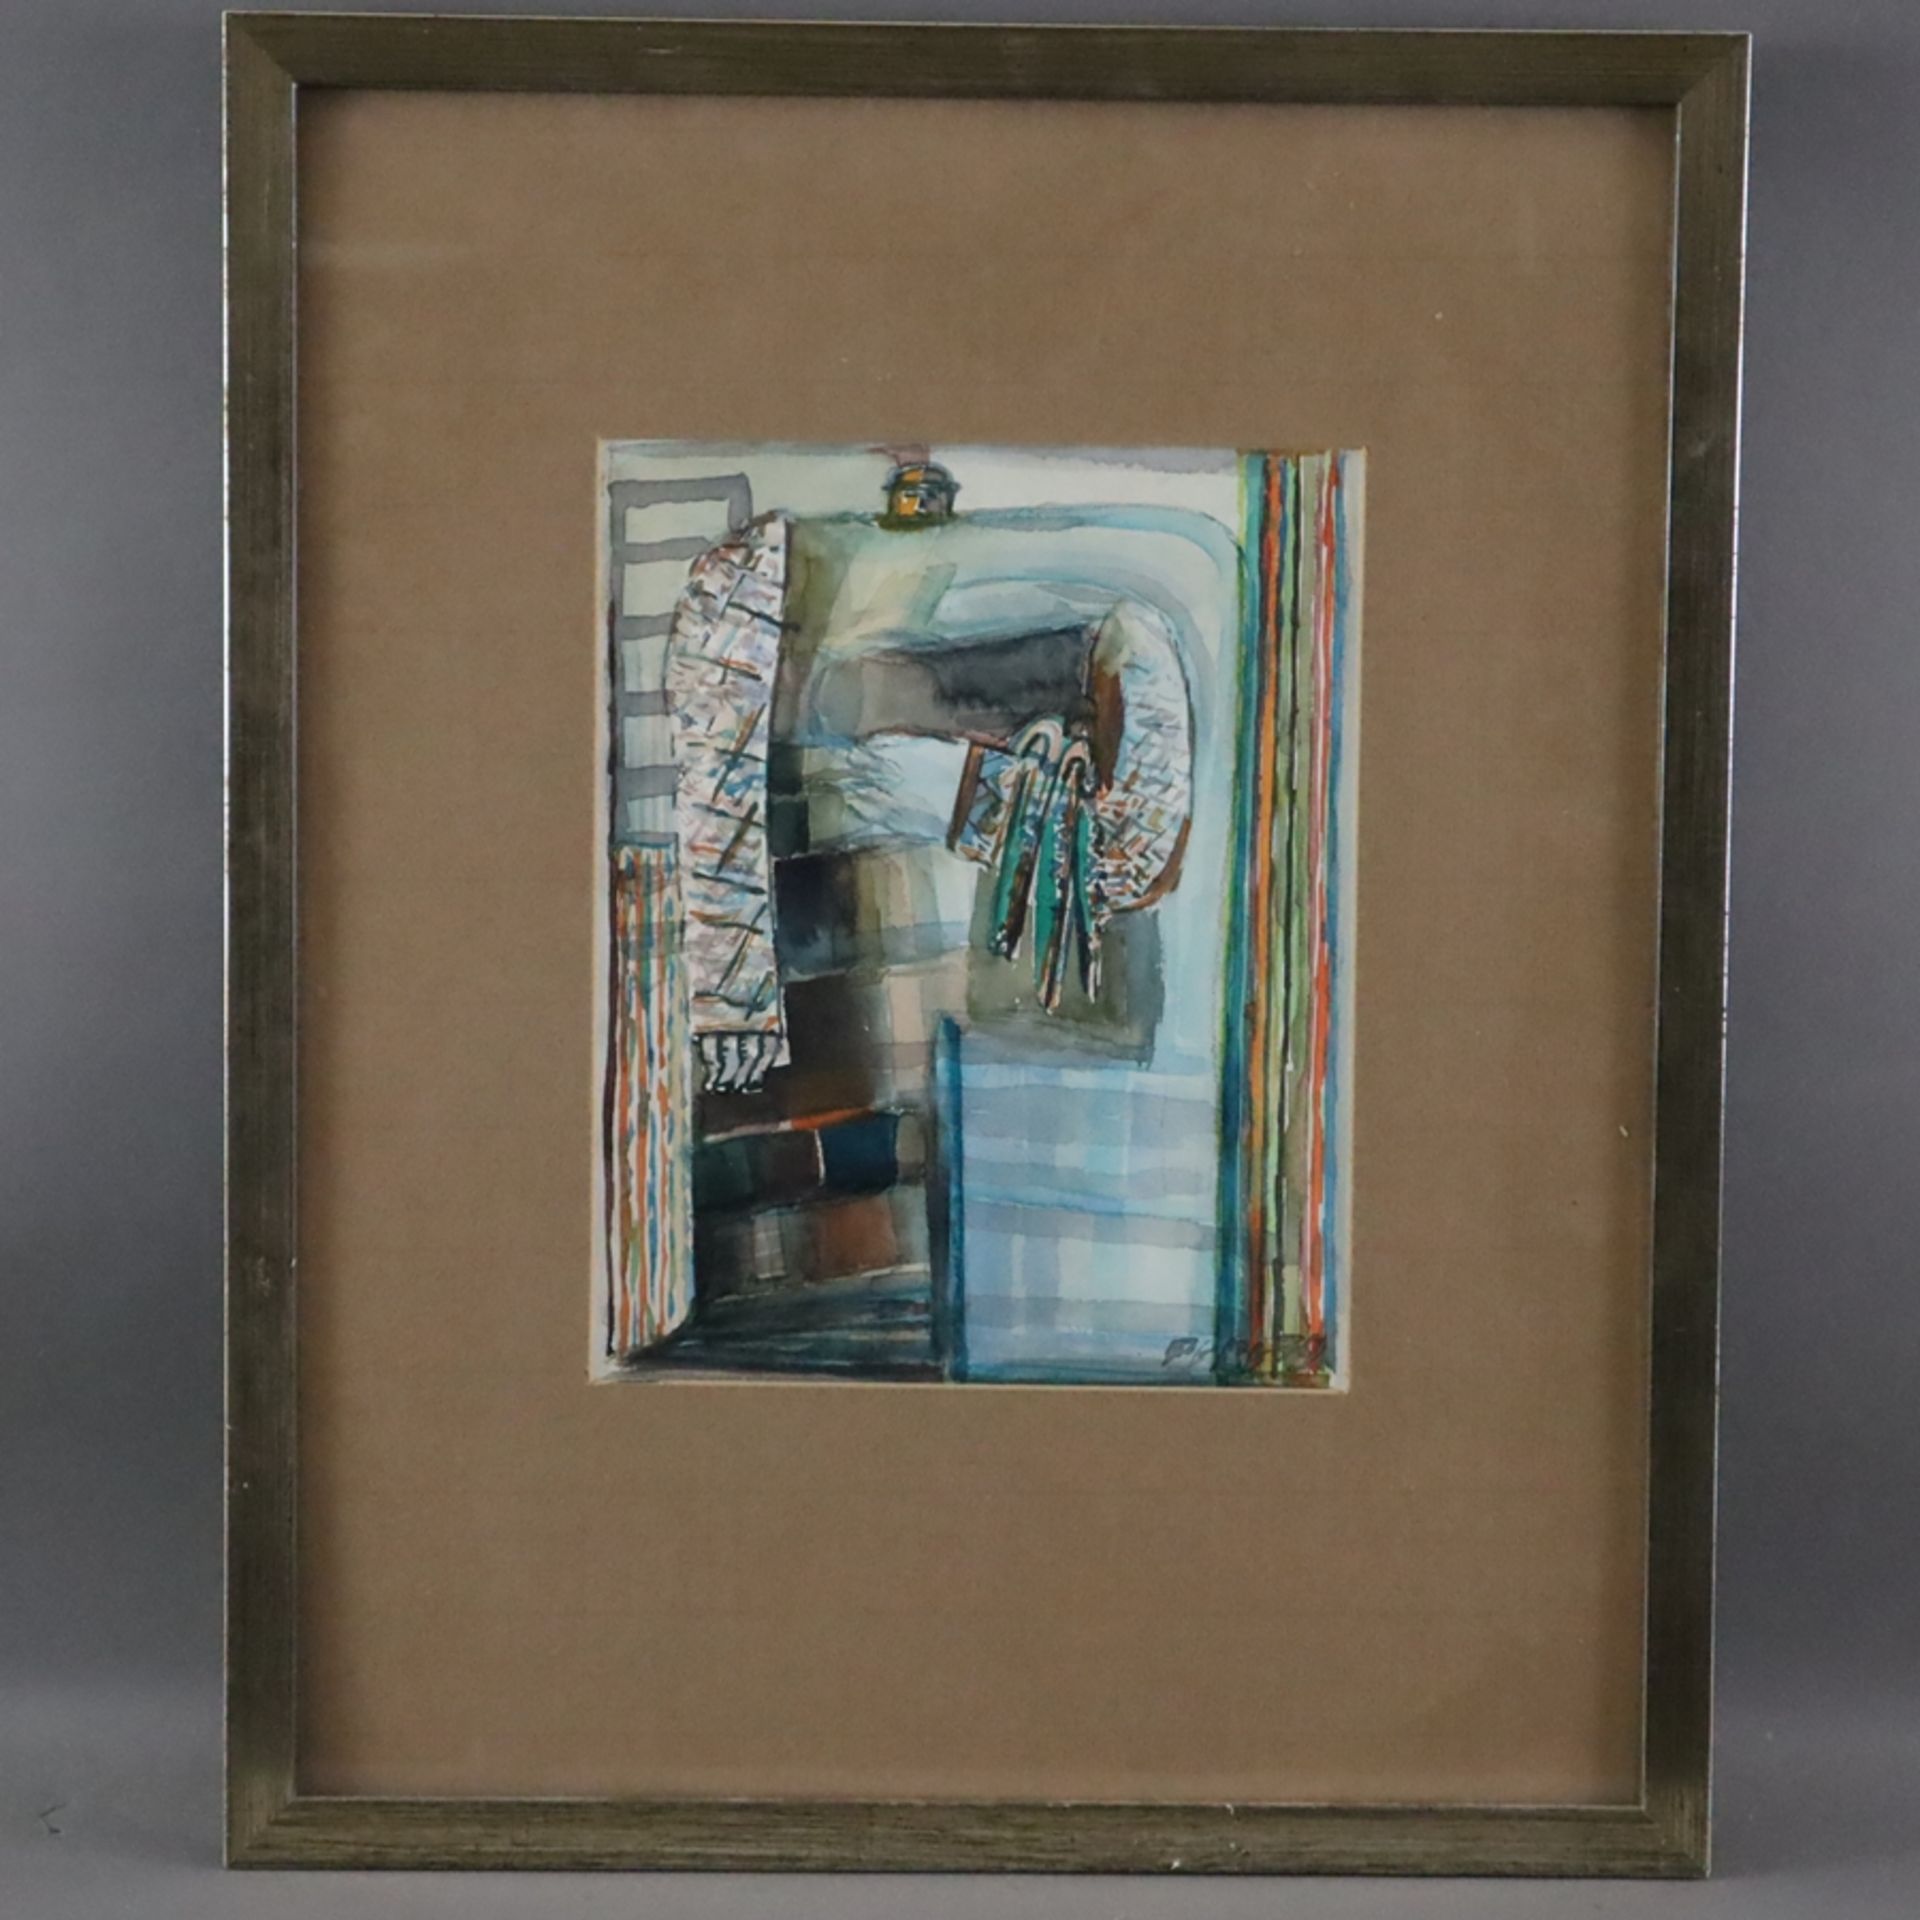 PEBE (Paul Bader, 1928-2019) - Abstrakte Figur, 1979, Aquarell auf Papier, signiert und datiert "PE - Image 2 of 7